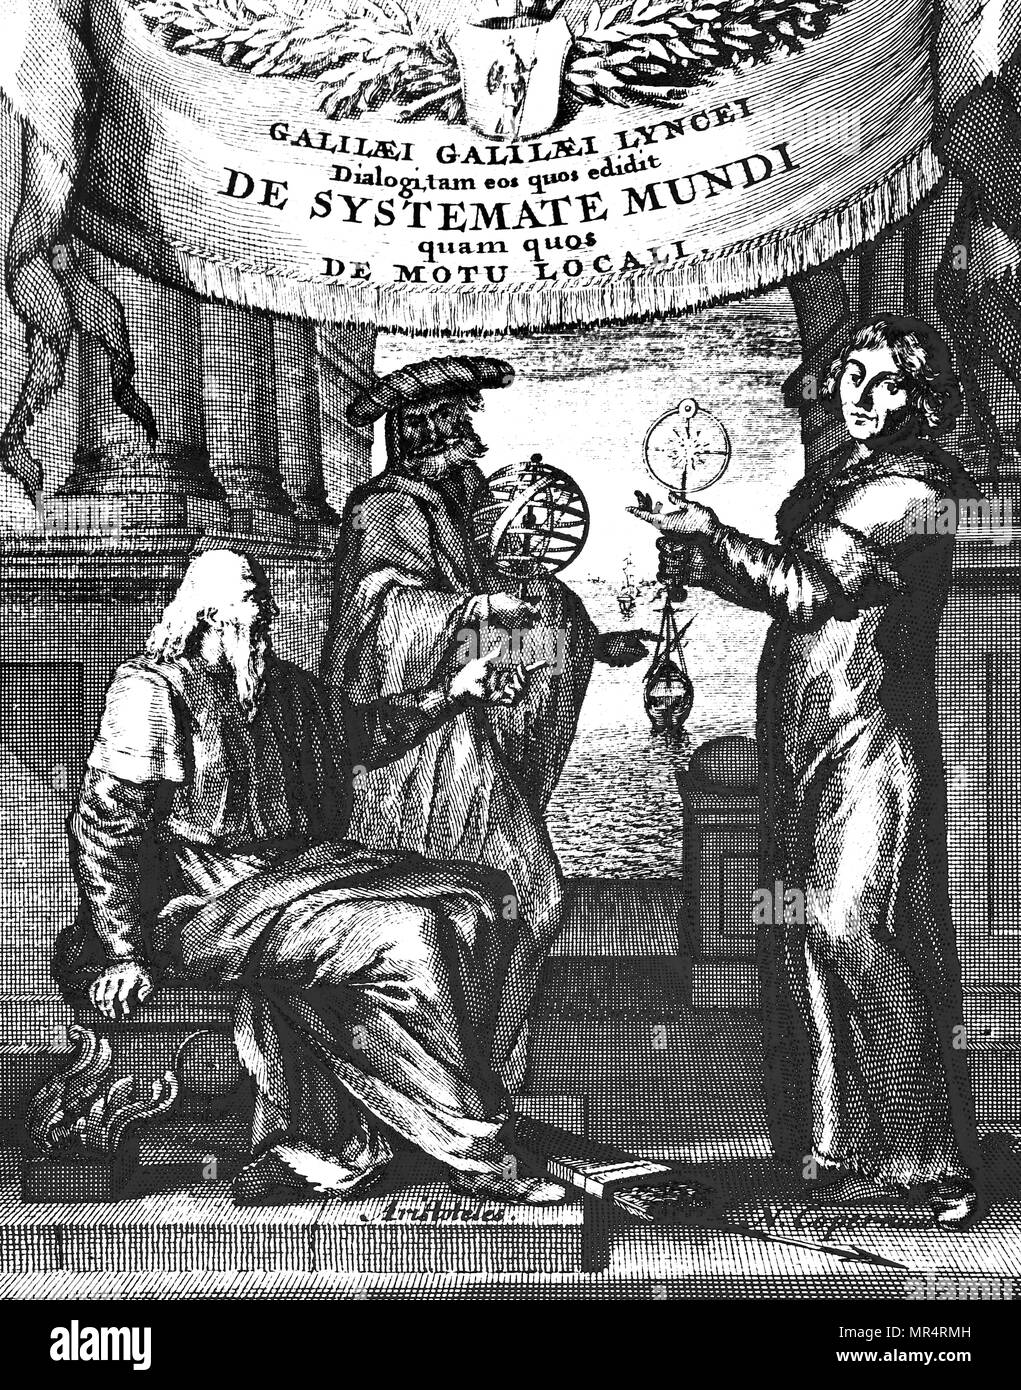 Titelseite des lateinischen Ausgabe von Galileo Dialogo (Dialog über die beiden Chief Welt Systeme) von Galileo Galilei. Galileo Galilei (1564-1642), einem italienischen Universalgelehrten. Vom 17. Jahrhundert Stockfoto